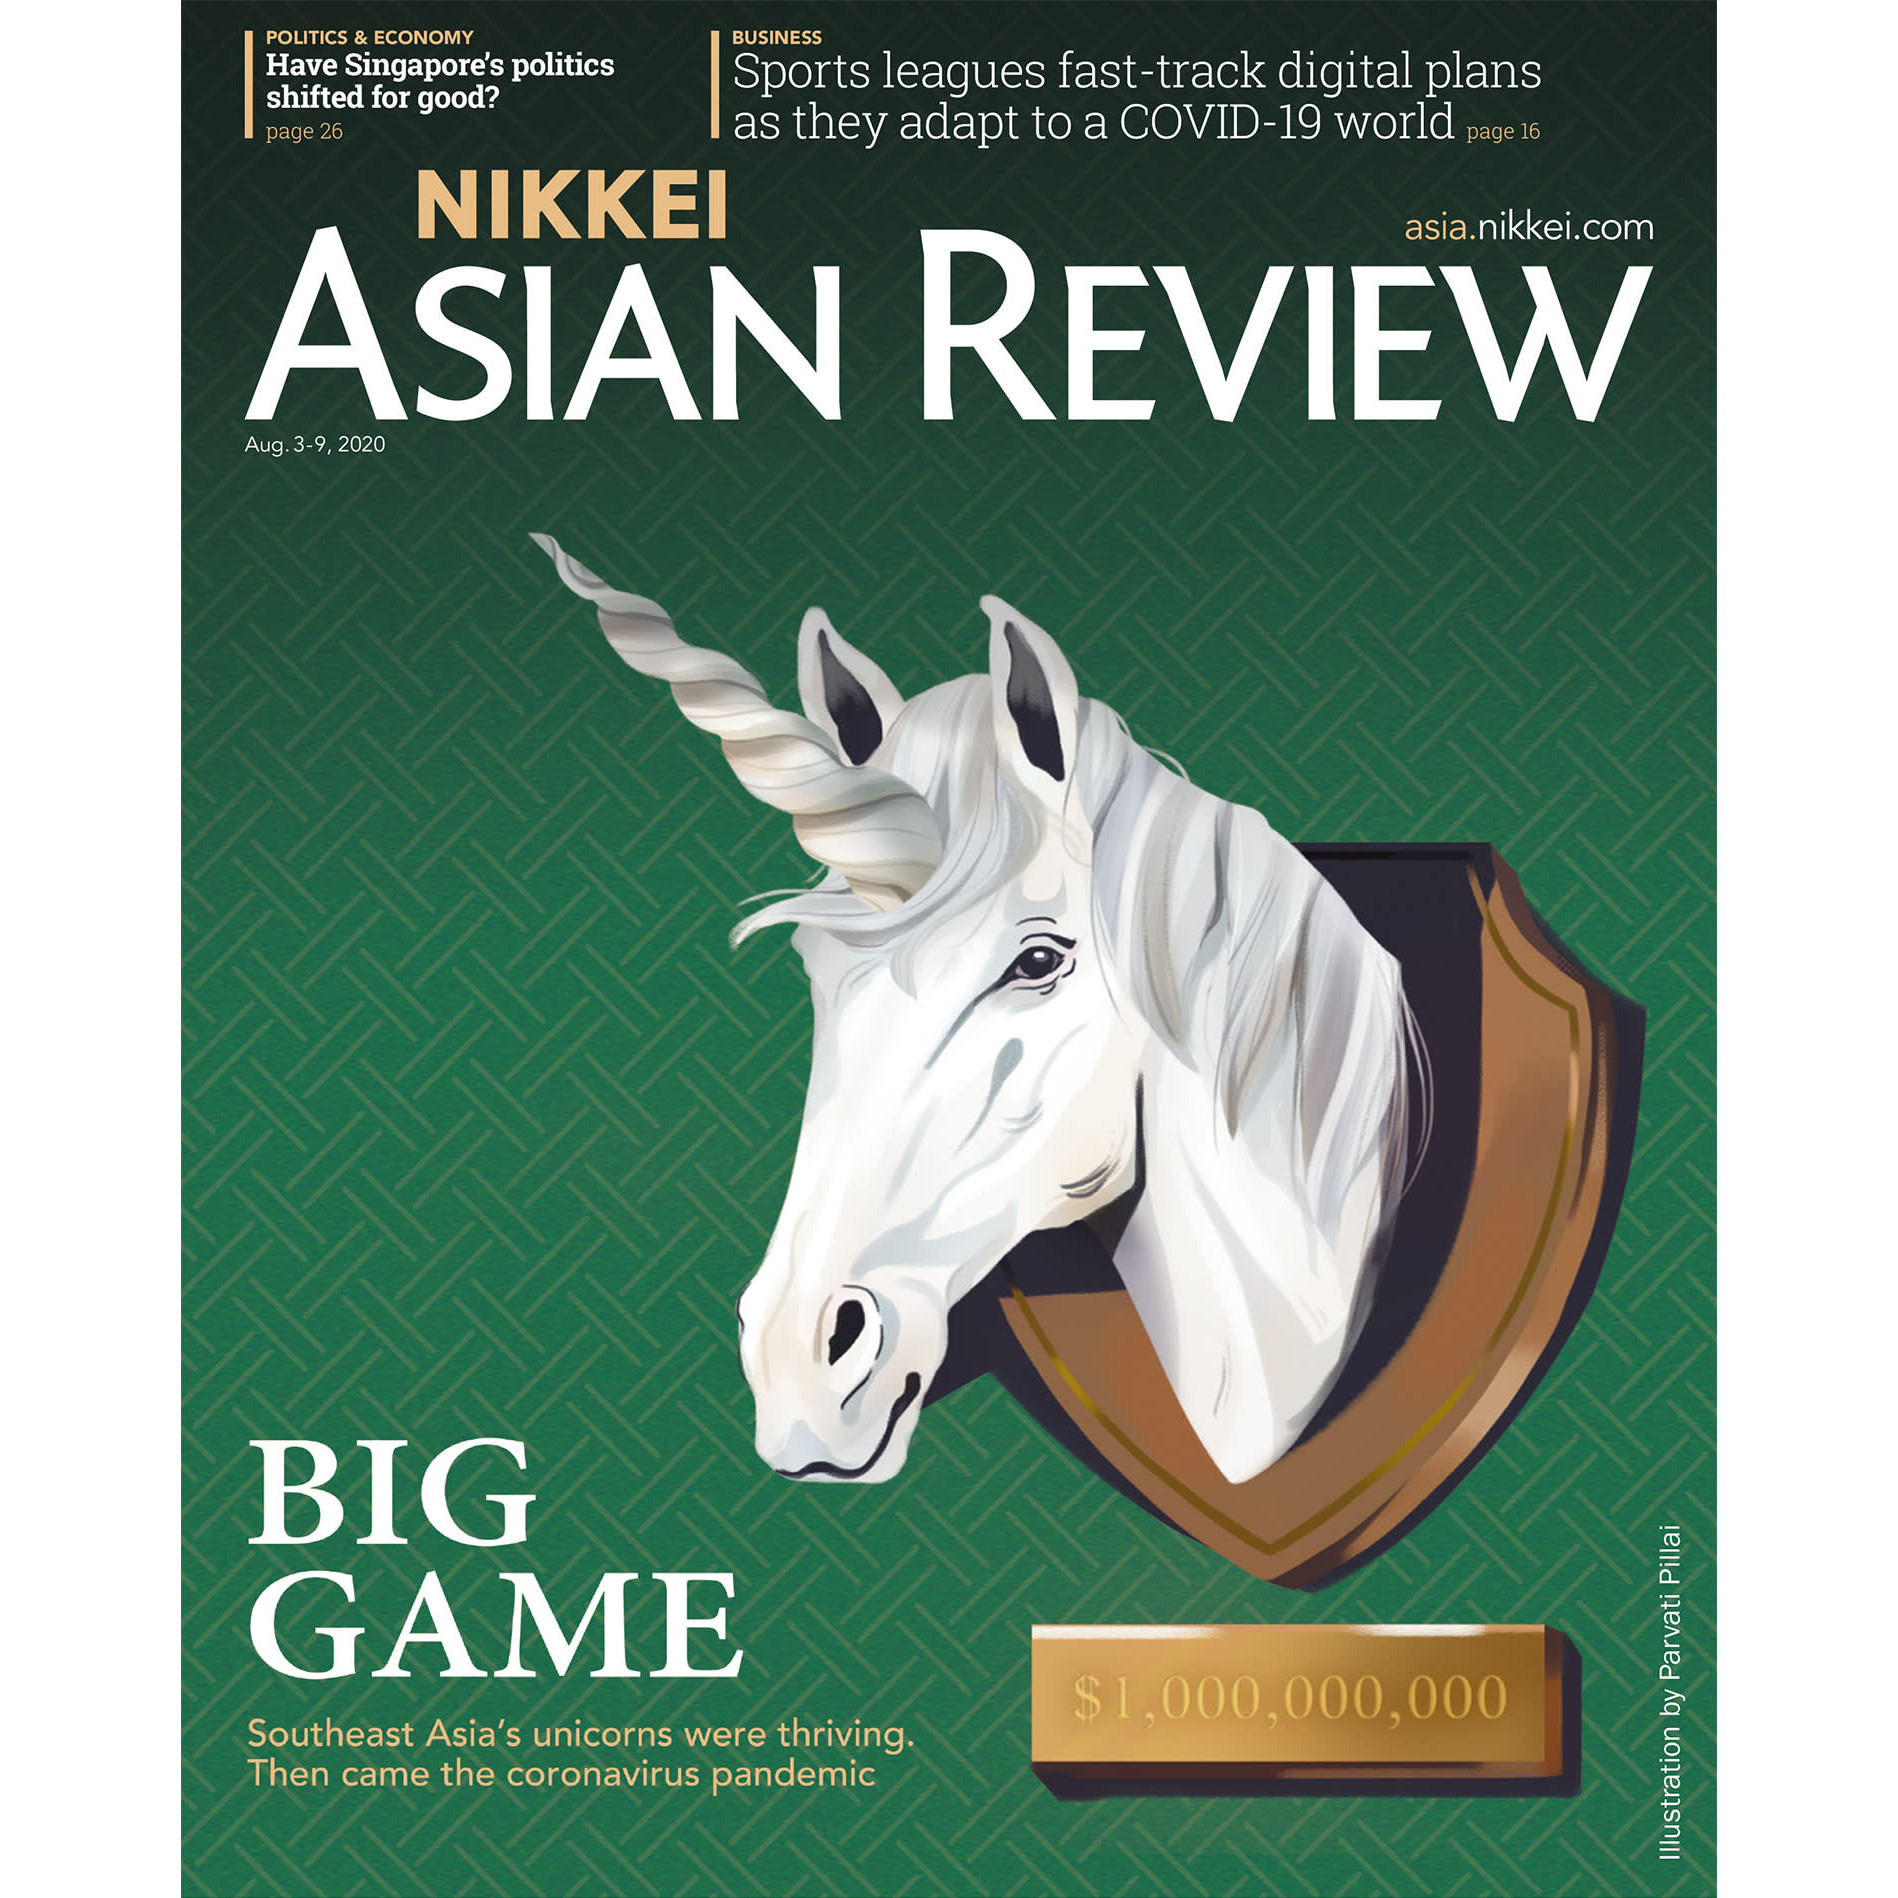 Nikkei Asian Review: Big Game - 31.20, tạp chí kinh tế nước ngoài, nhập khẩu từ Singapore